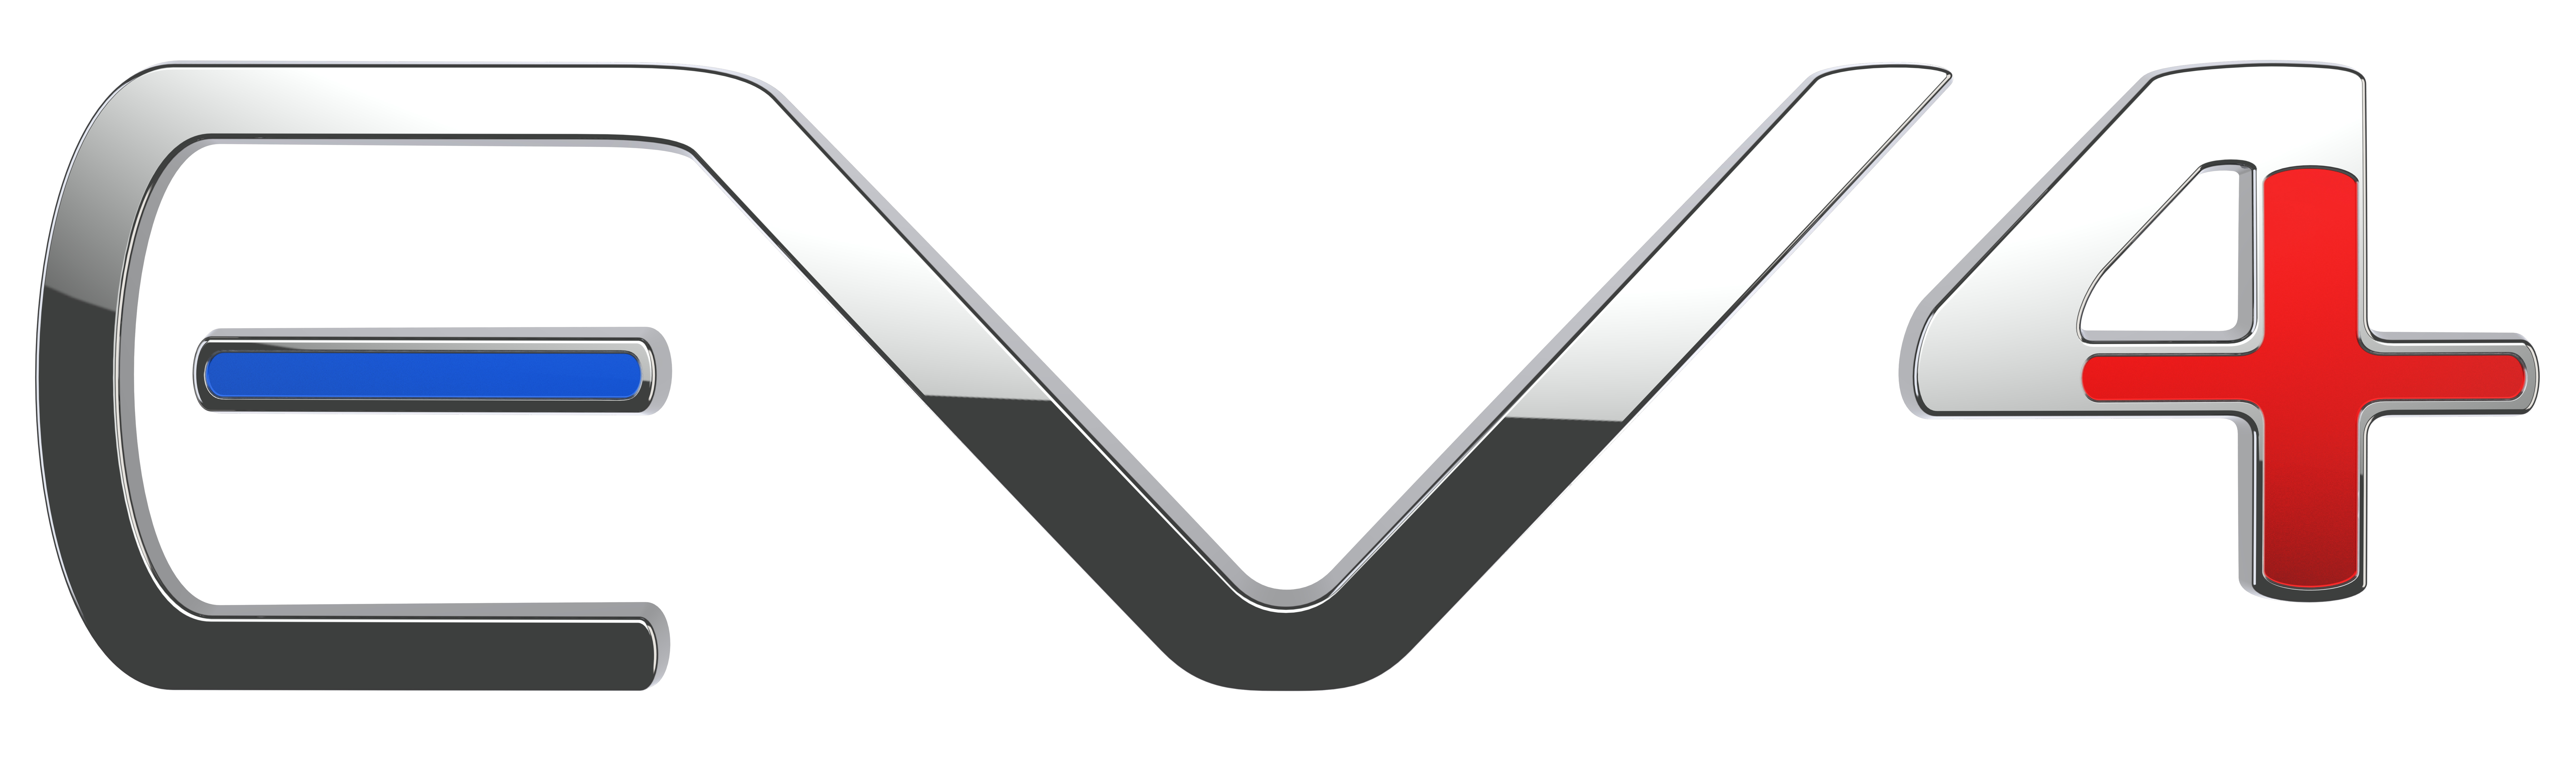 logo_EV4.jpeg
